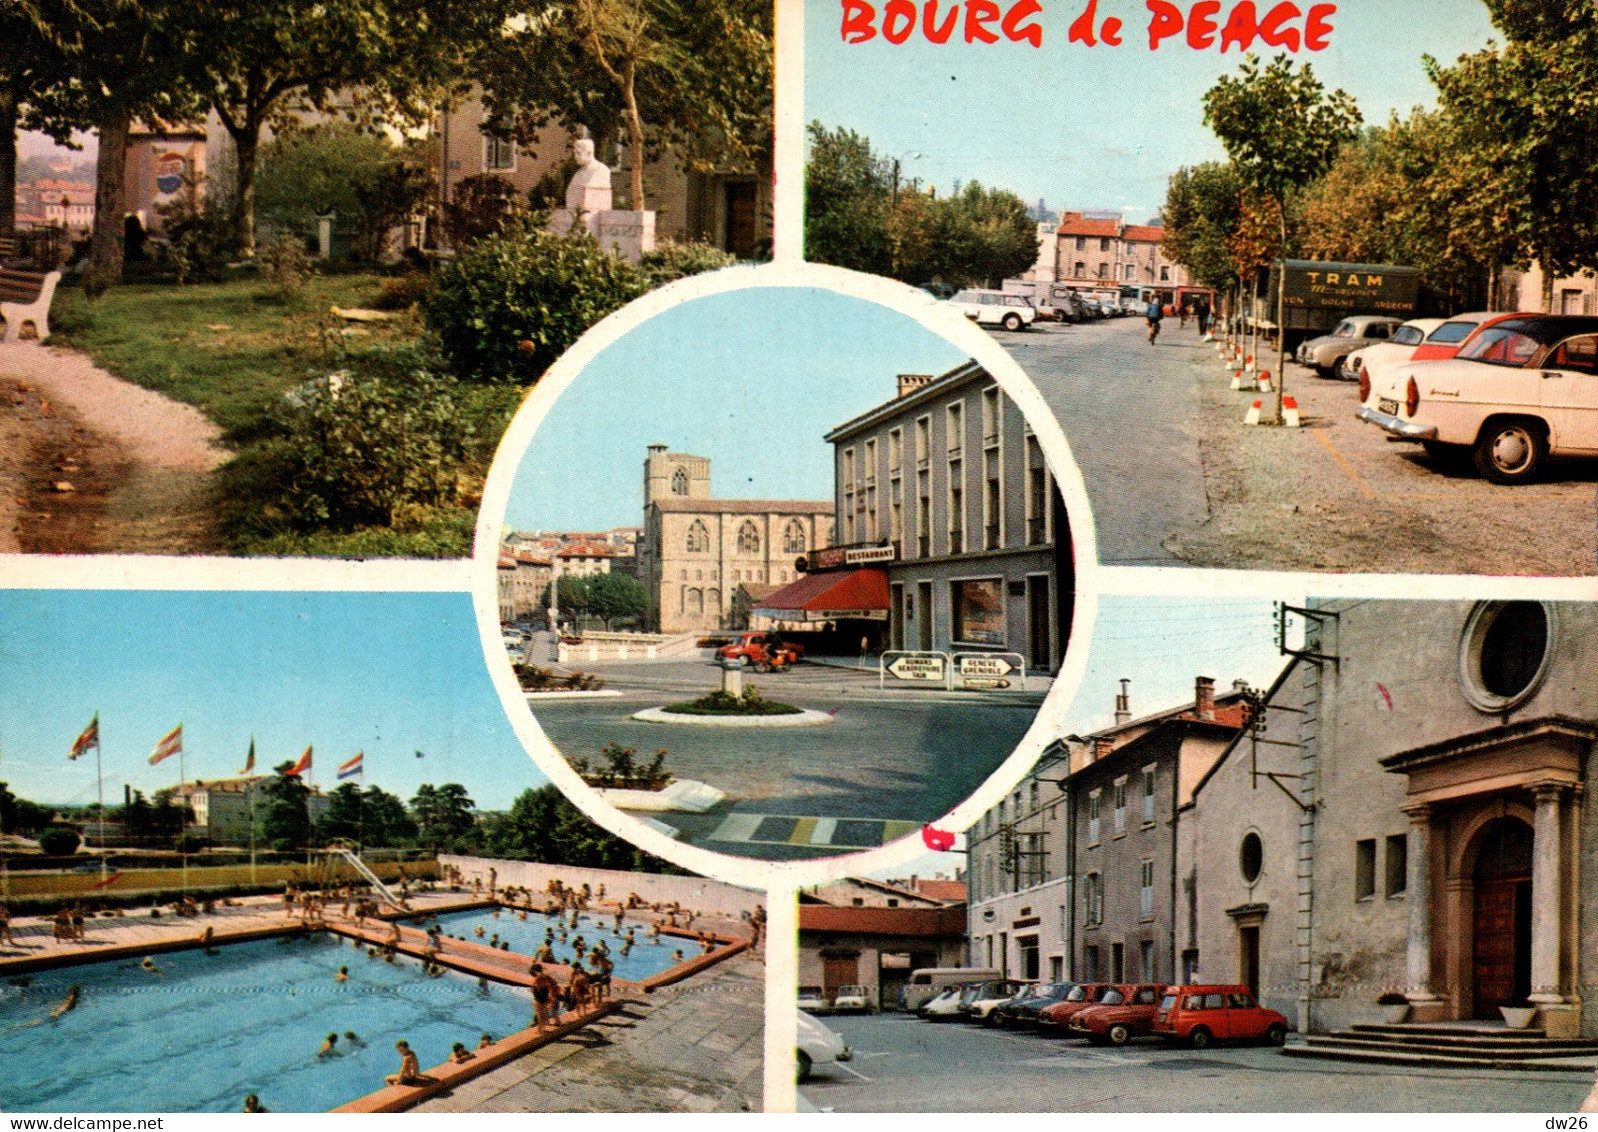 Bourg-de-Péage (Drôme) Multivues, Piscine, Place D'Agier, Eglise - Edition J. Cellard - Carte N° 33139 - Bourg-de-Péage